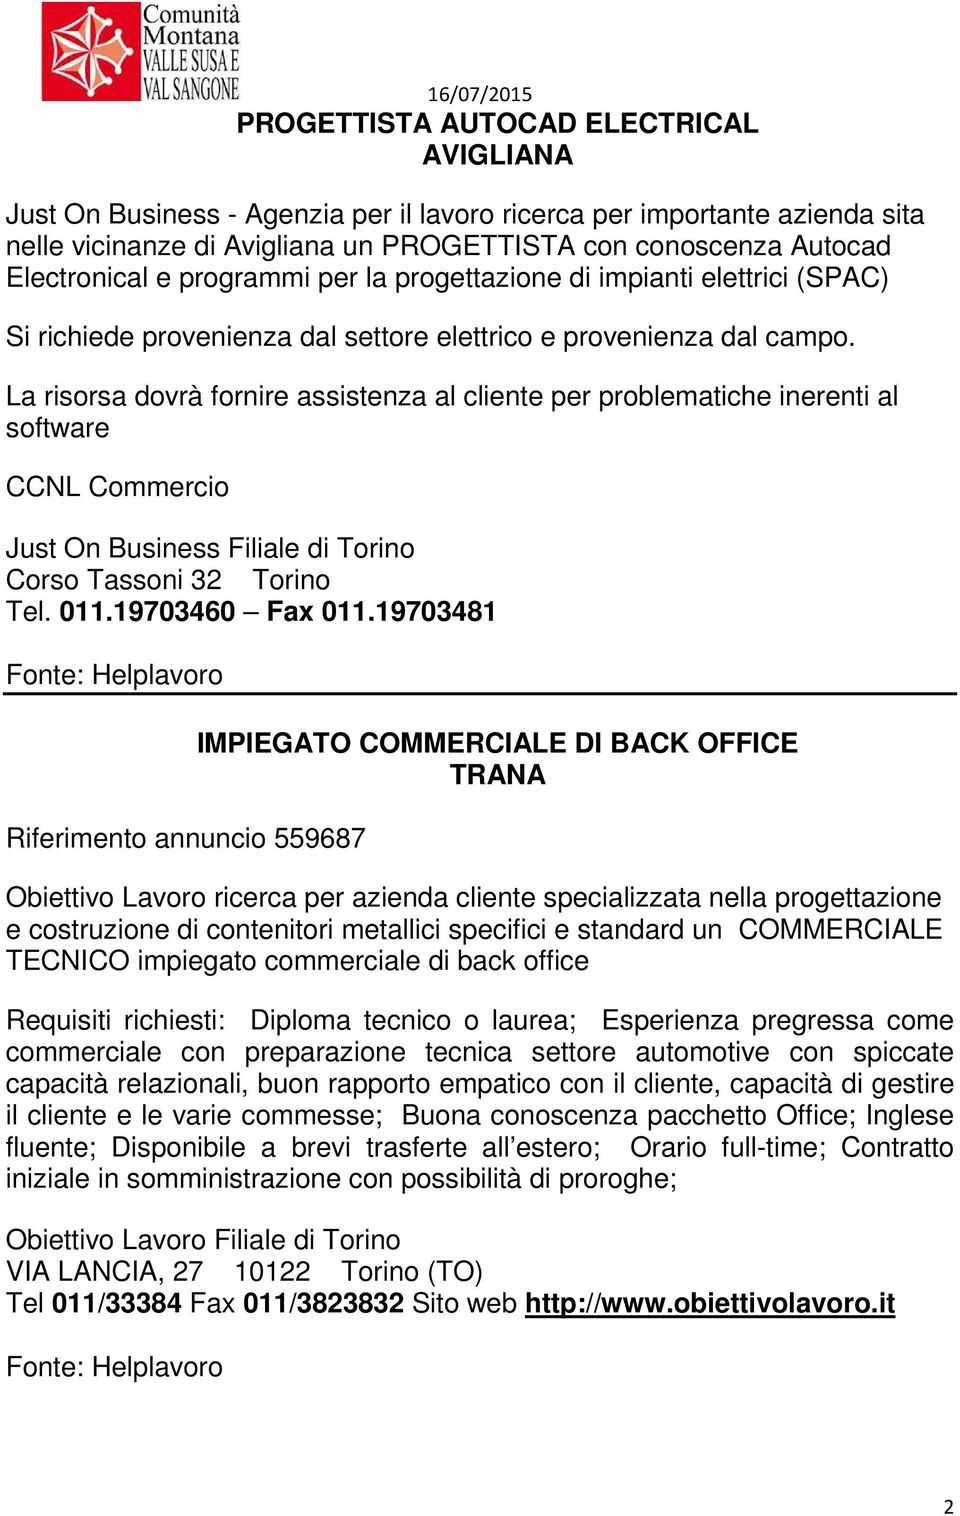 La risorsa dovrà fornire assistenza al cliente per problematiche inerenti al software CCNL Commercio Just On Business Filiale di Torino Corso Tassoni 32 Torino Tel. 011.19703460 Fax 011.